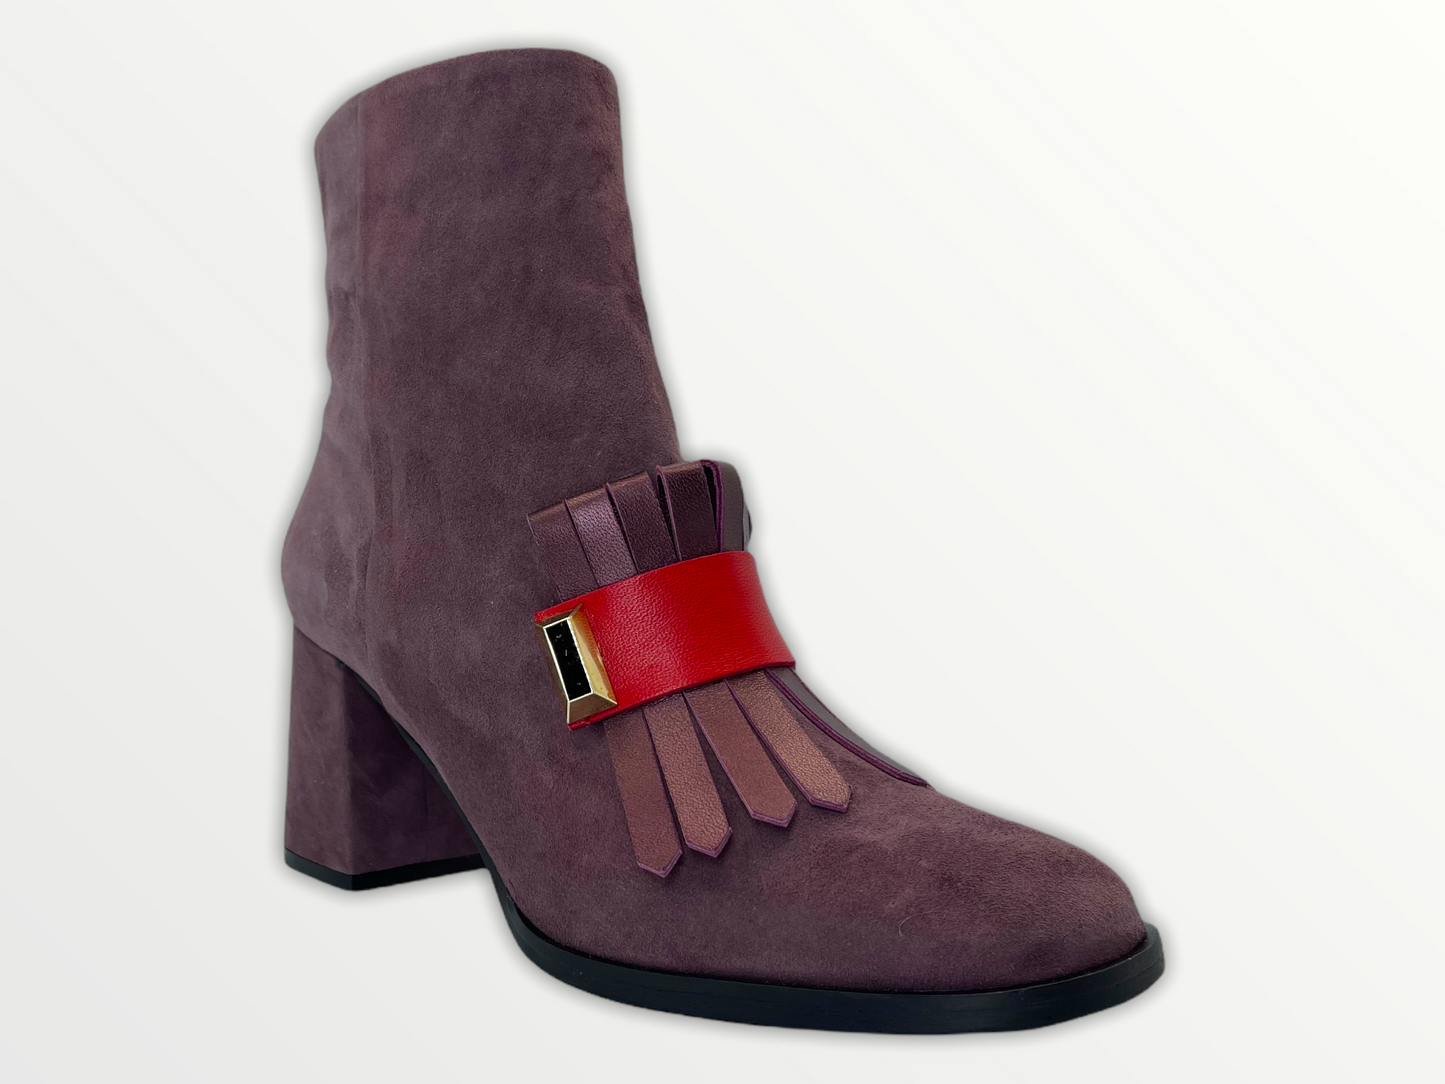 The Luksor Rose Suede Leather Block Heel Women Boot